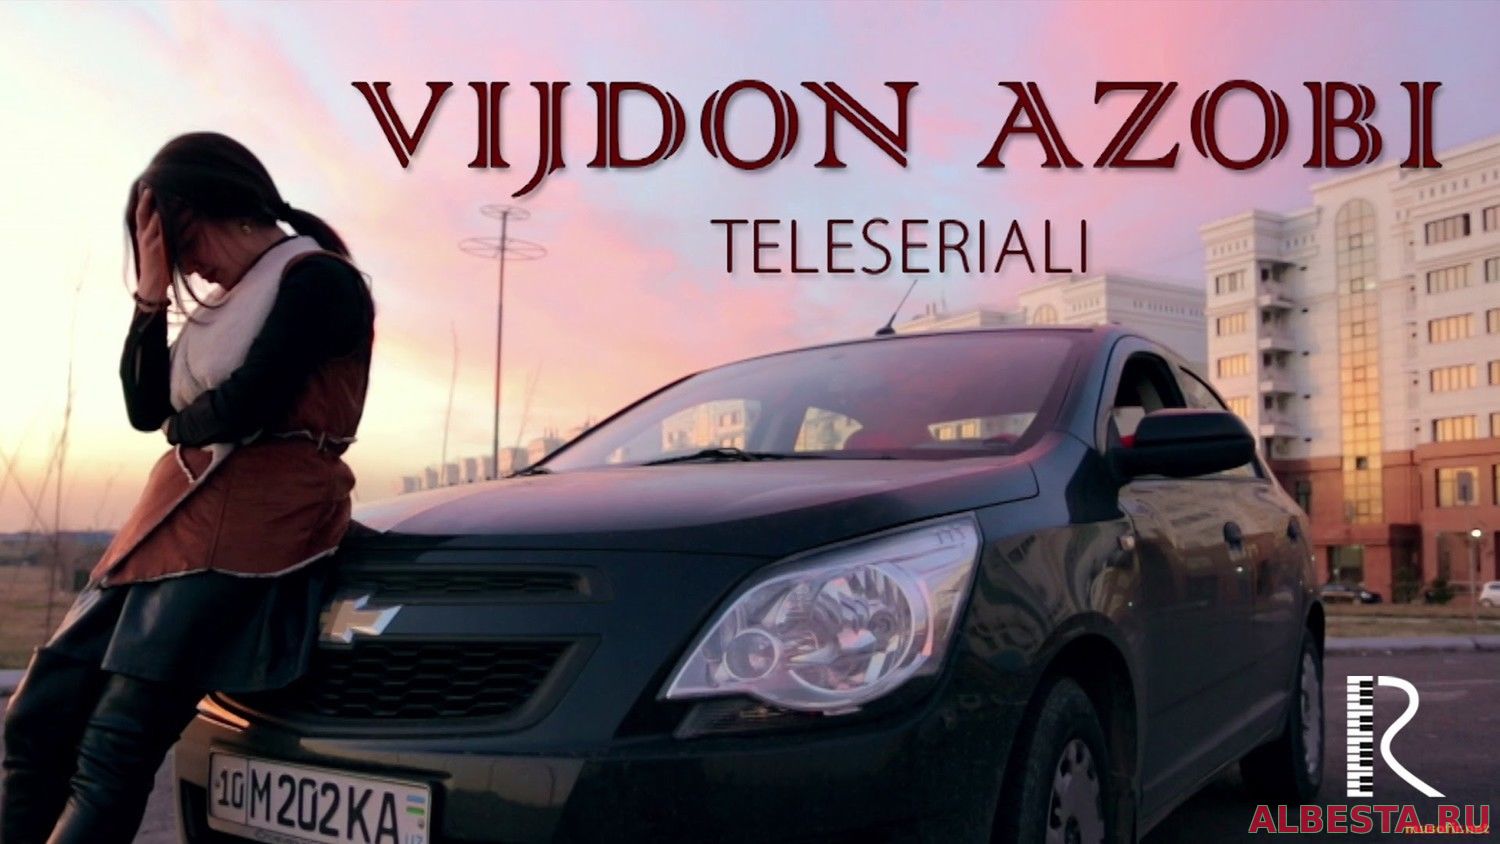 Vijdon azobi 2-3 qism yangi ozbek seriali 2016 смотреть онлайн